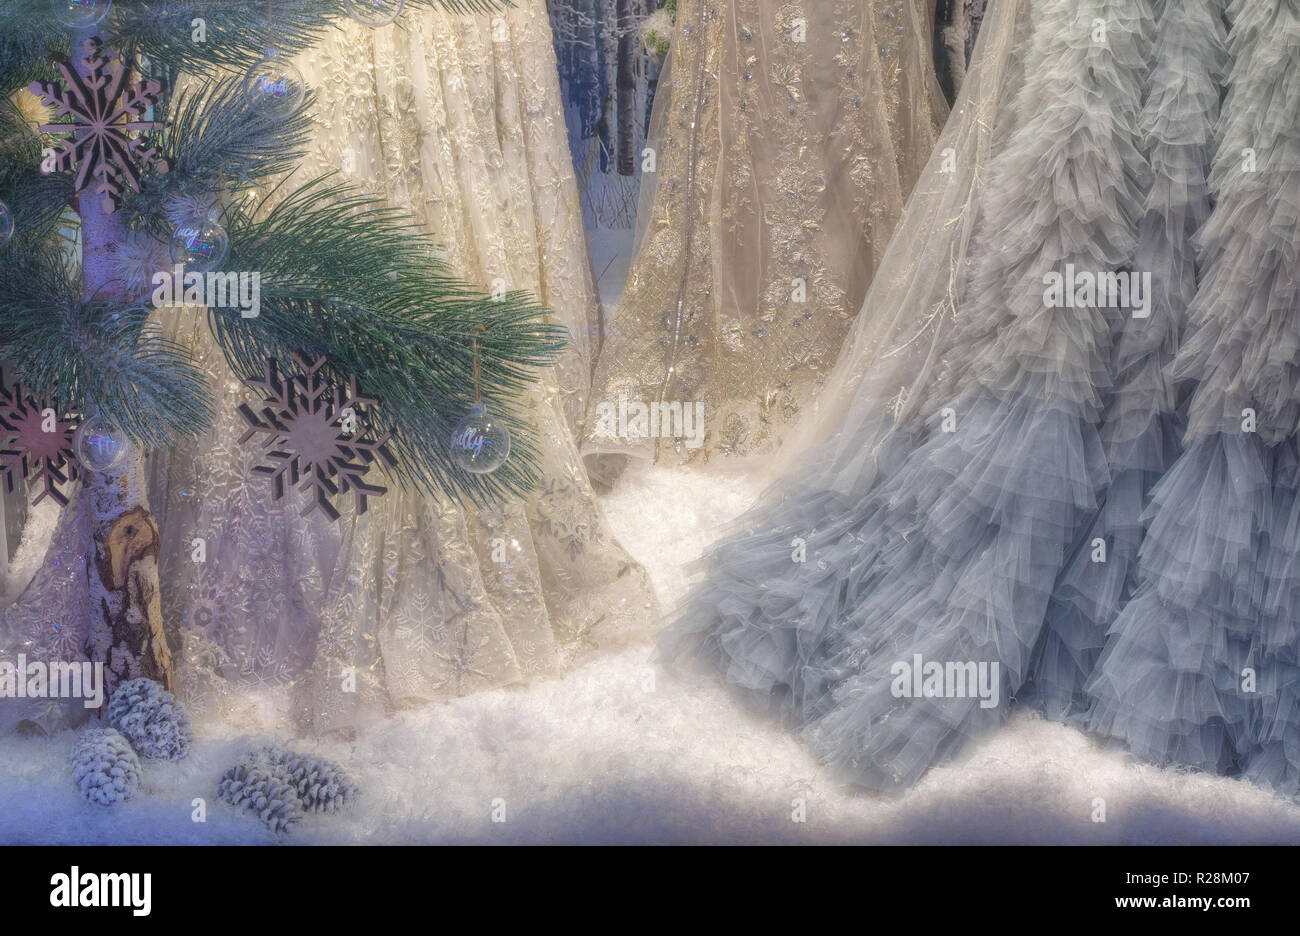 Vue sur un écran de Noël avec de la neige artificielle, pin et womens robes de Rundle Mall, de l'Adelaide en Australie du Sud, Australie. Banque D'Images